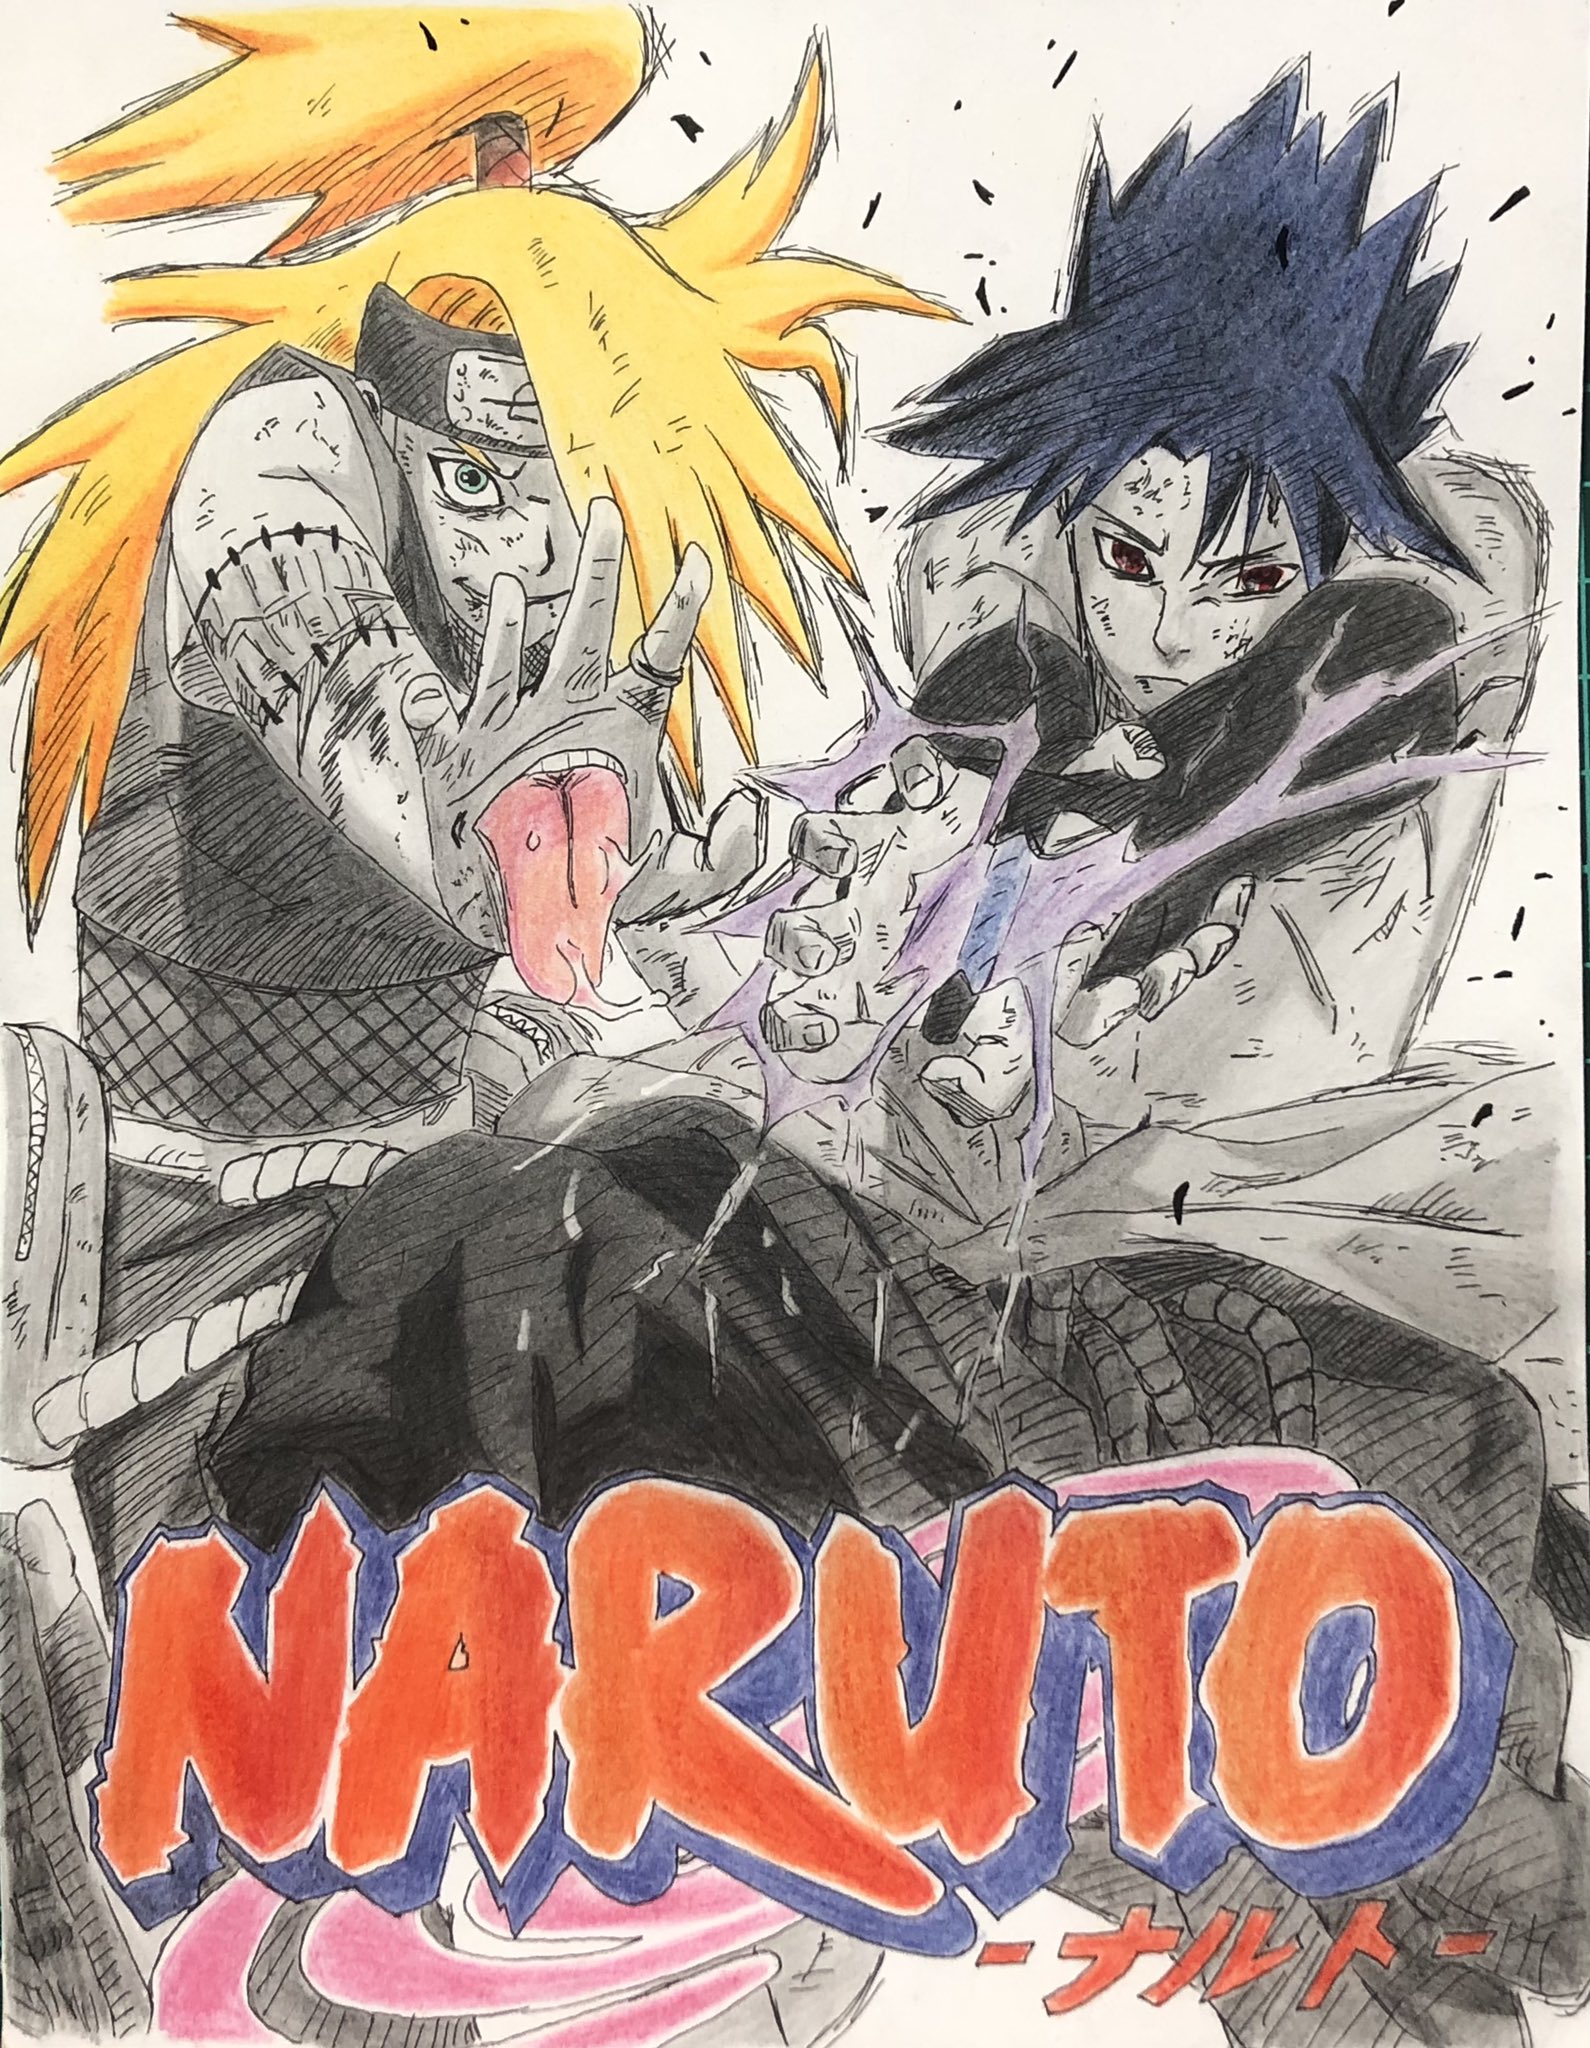 なめたけ Narutoの40巻の表紙を模写しました Naruto 模写 うちはサスケ デイダラ T Co Lywgro1mac Twitter